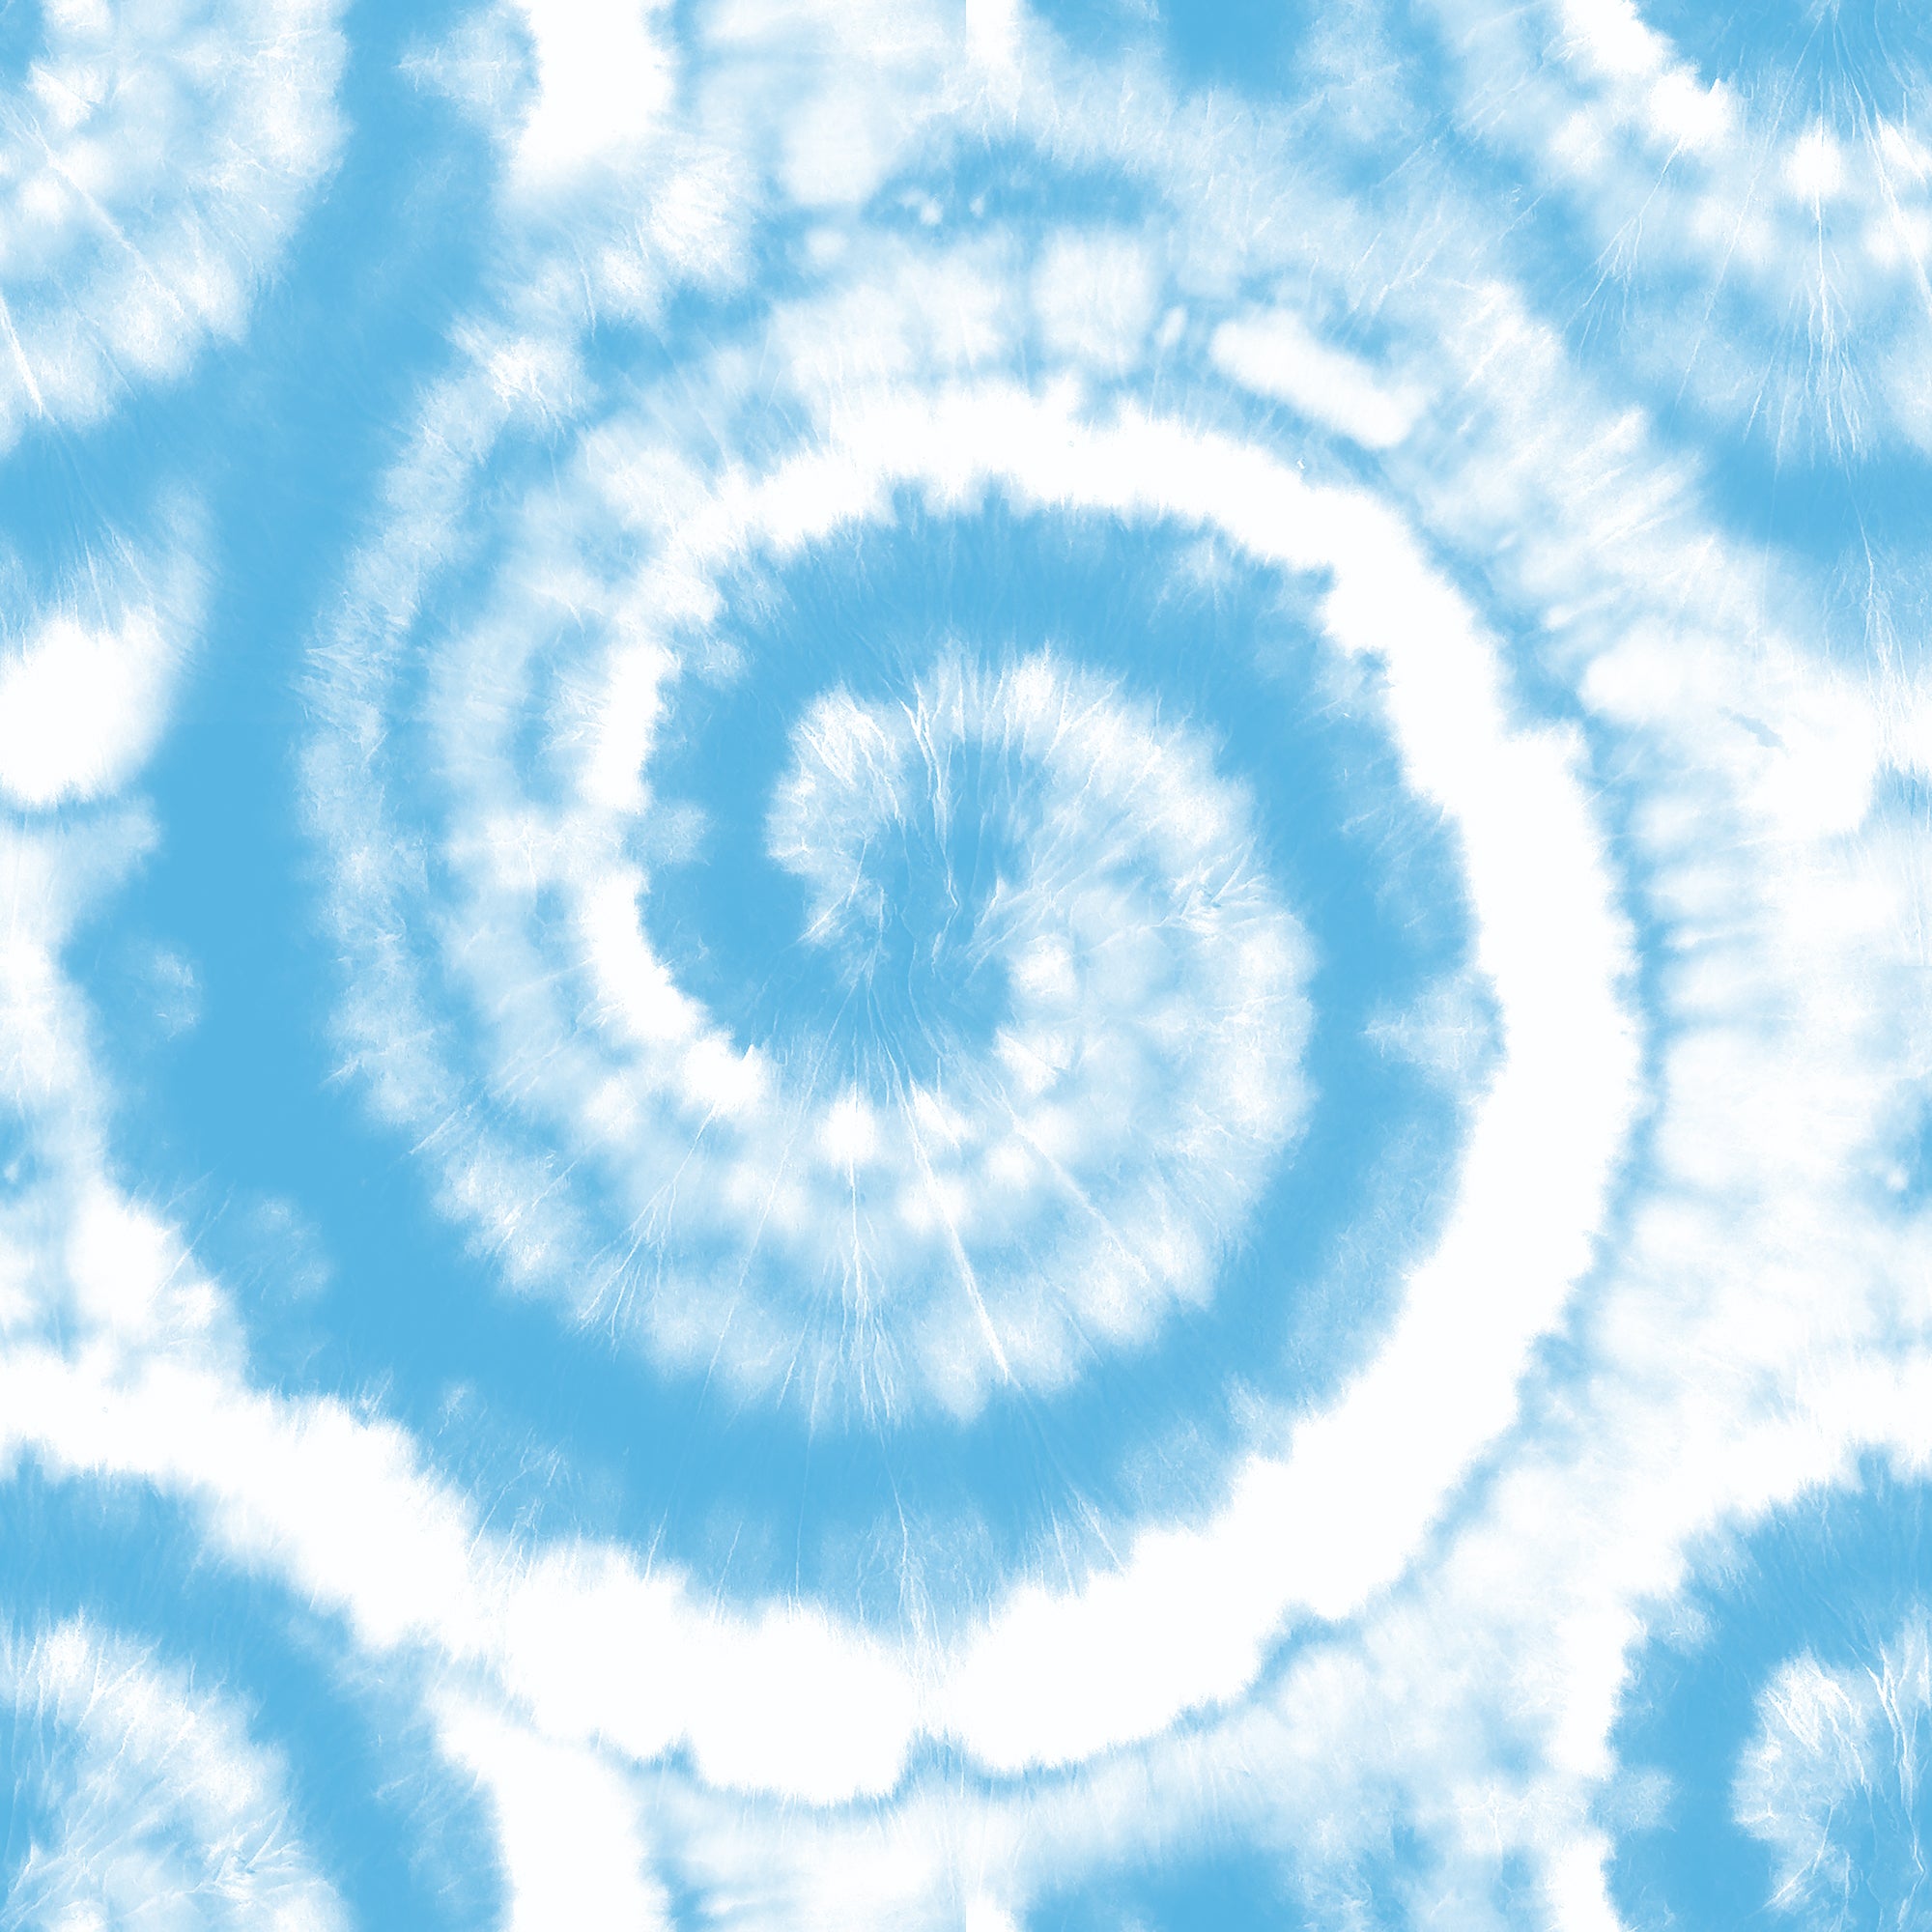 Spiral Tie Dye Pattern Swirl Tie Dye  Hippie Boho Tiedye Texture Backdrop  In Blue Skyblues Stock  Pastel Blue Tie Dye HD phone wallpaper  Pxfuel